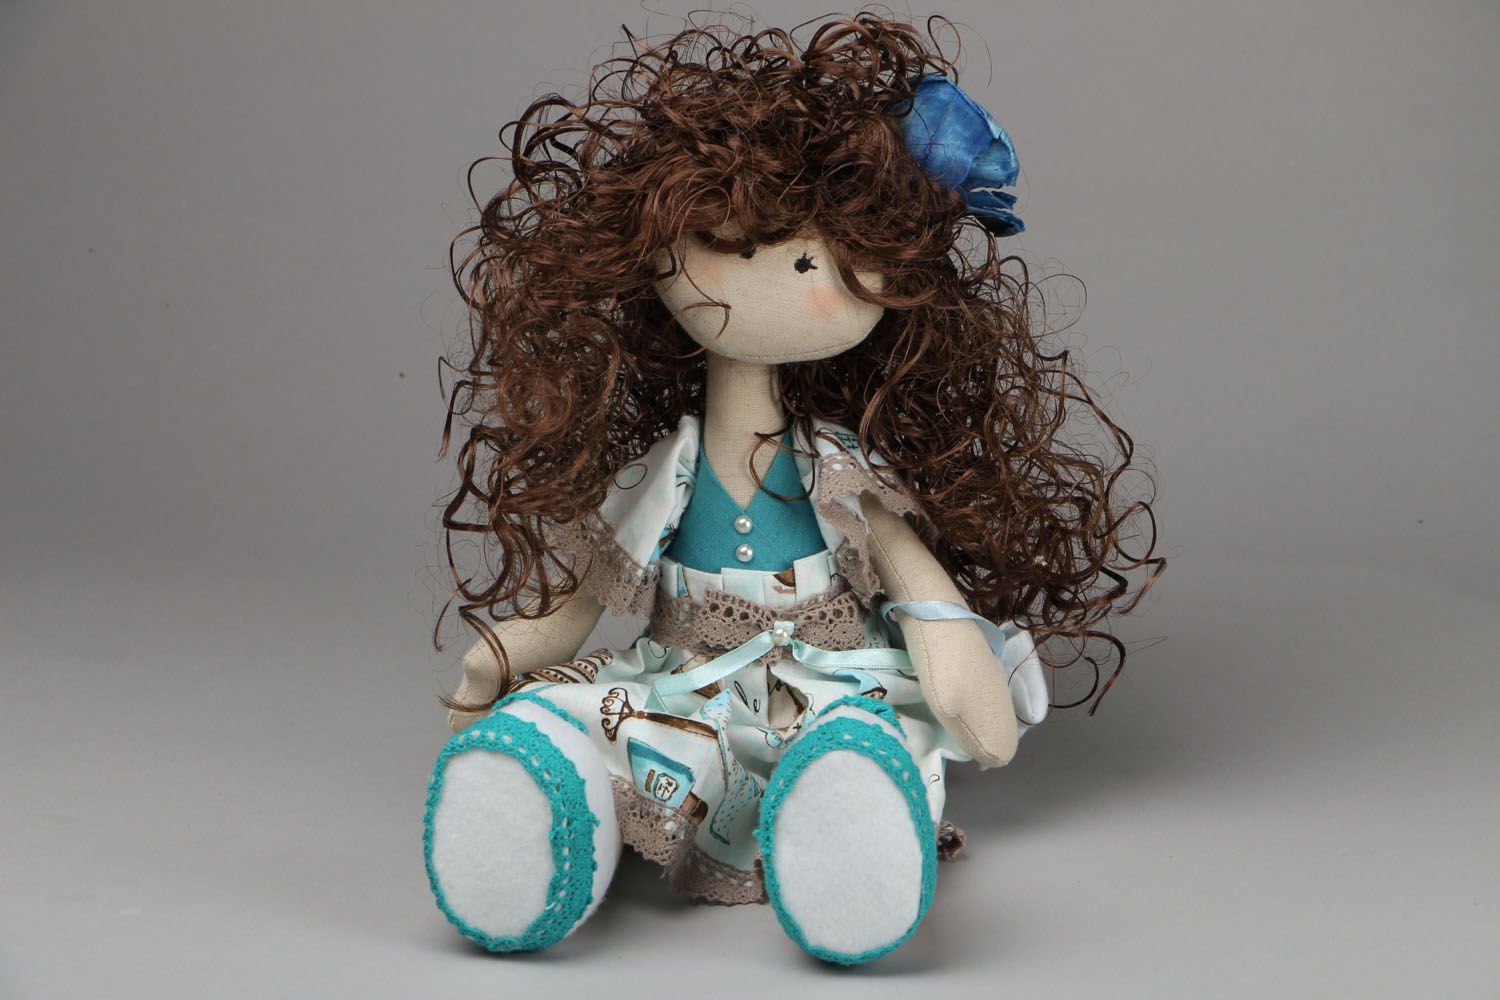 Textil Puppe Dekor im blauen Kleid foto 1